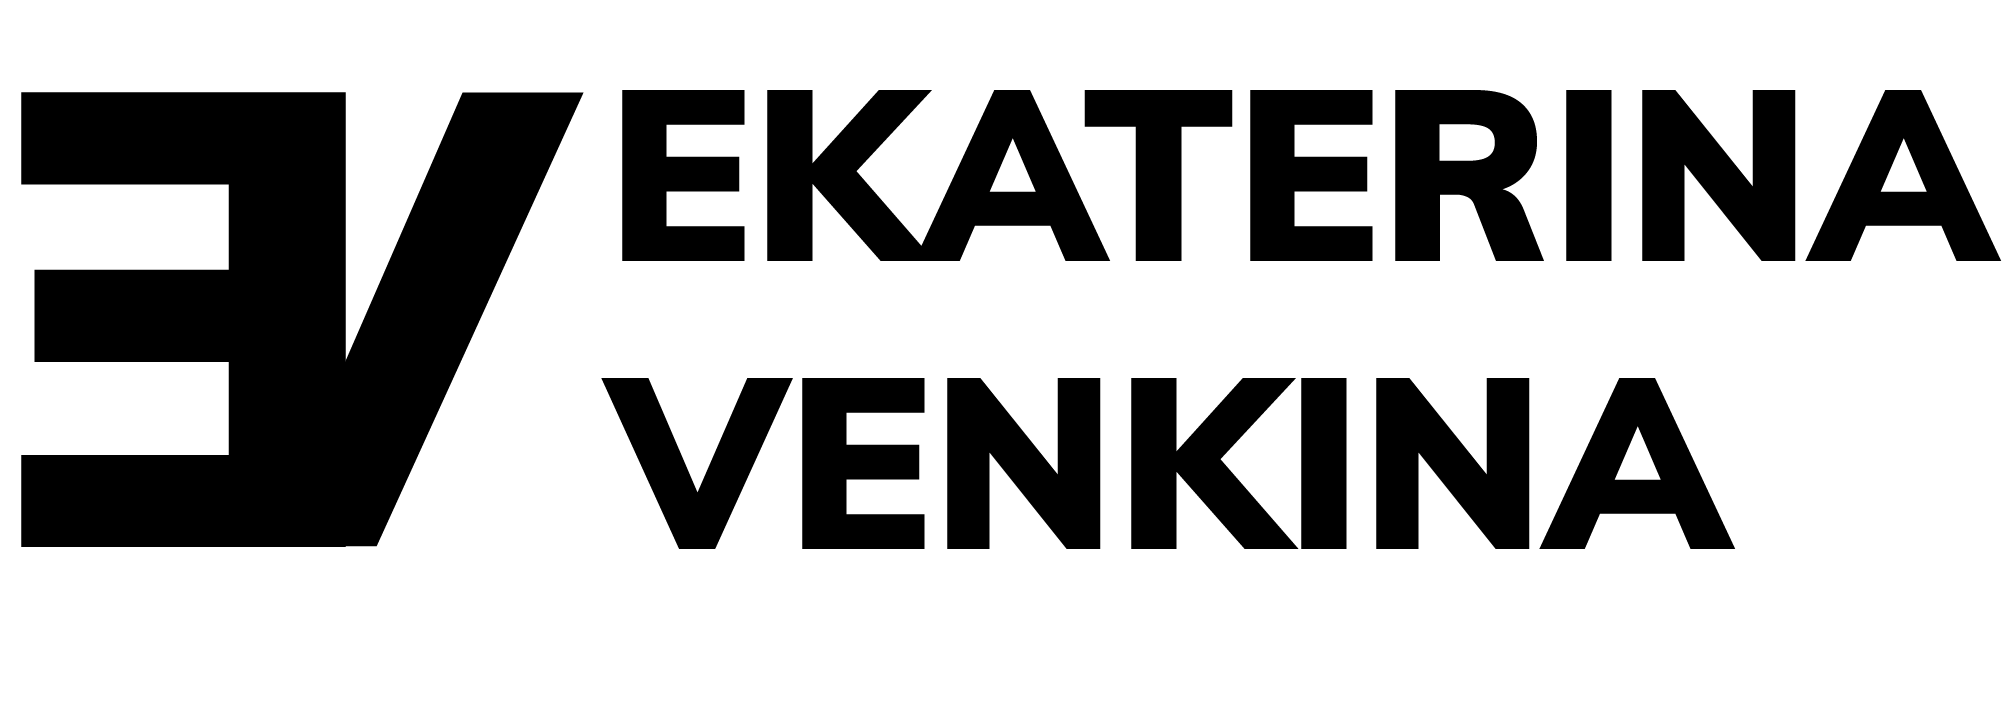 ekaterina-venkina-logo-black